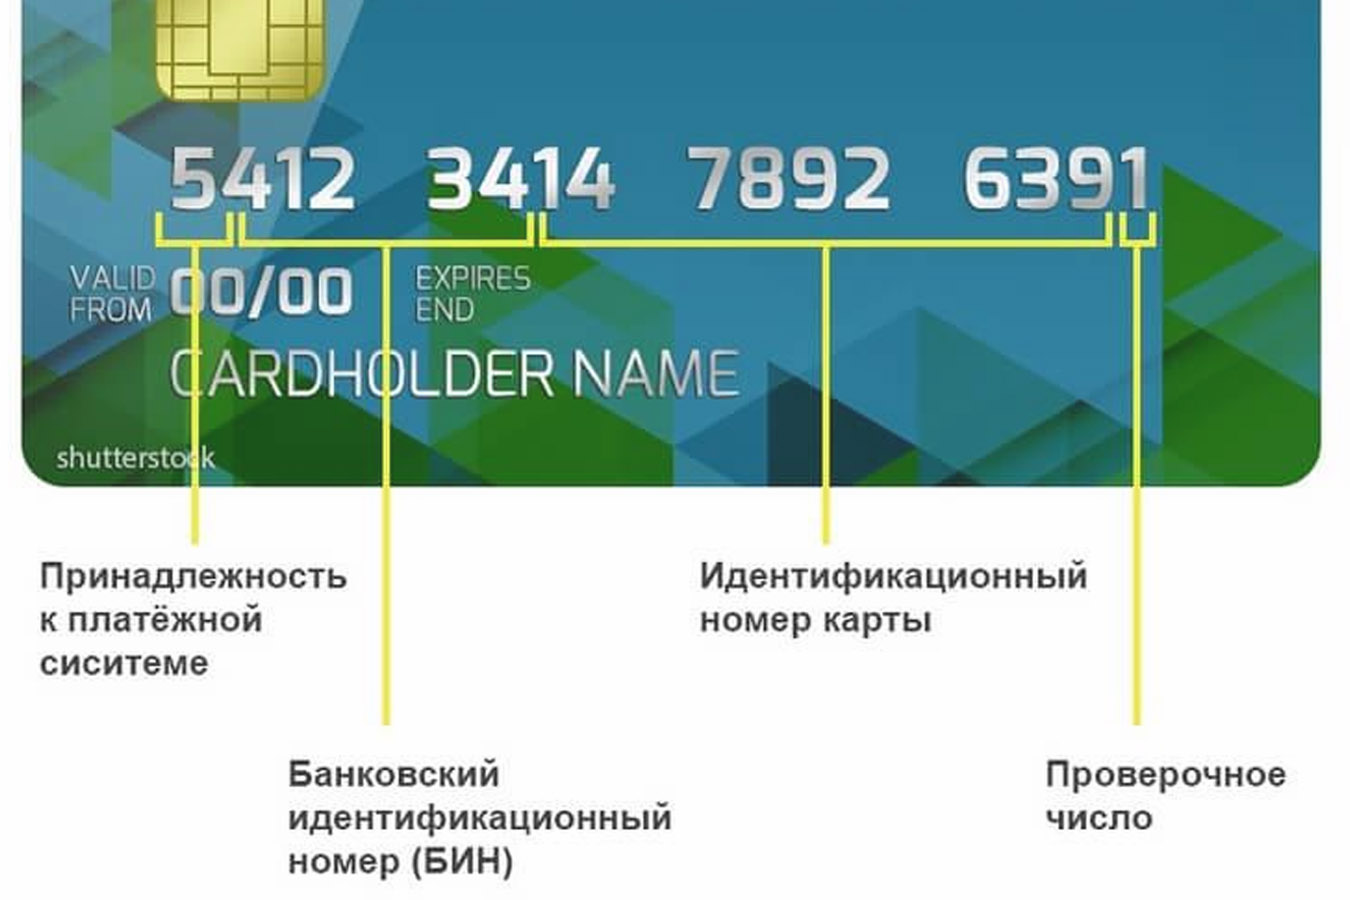 Дата на карте сбербанка. Идентификационный номер банковской карты. Банковская карта. Номер карты. Идентификационный номер карточки.